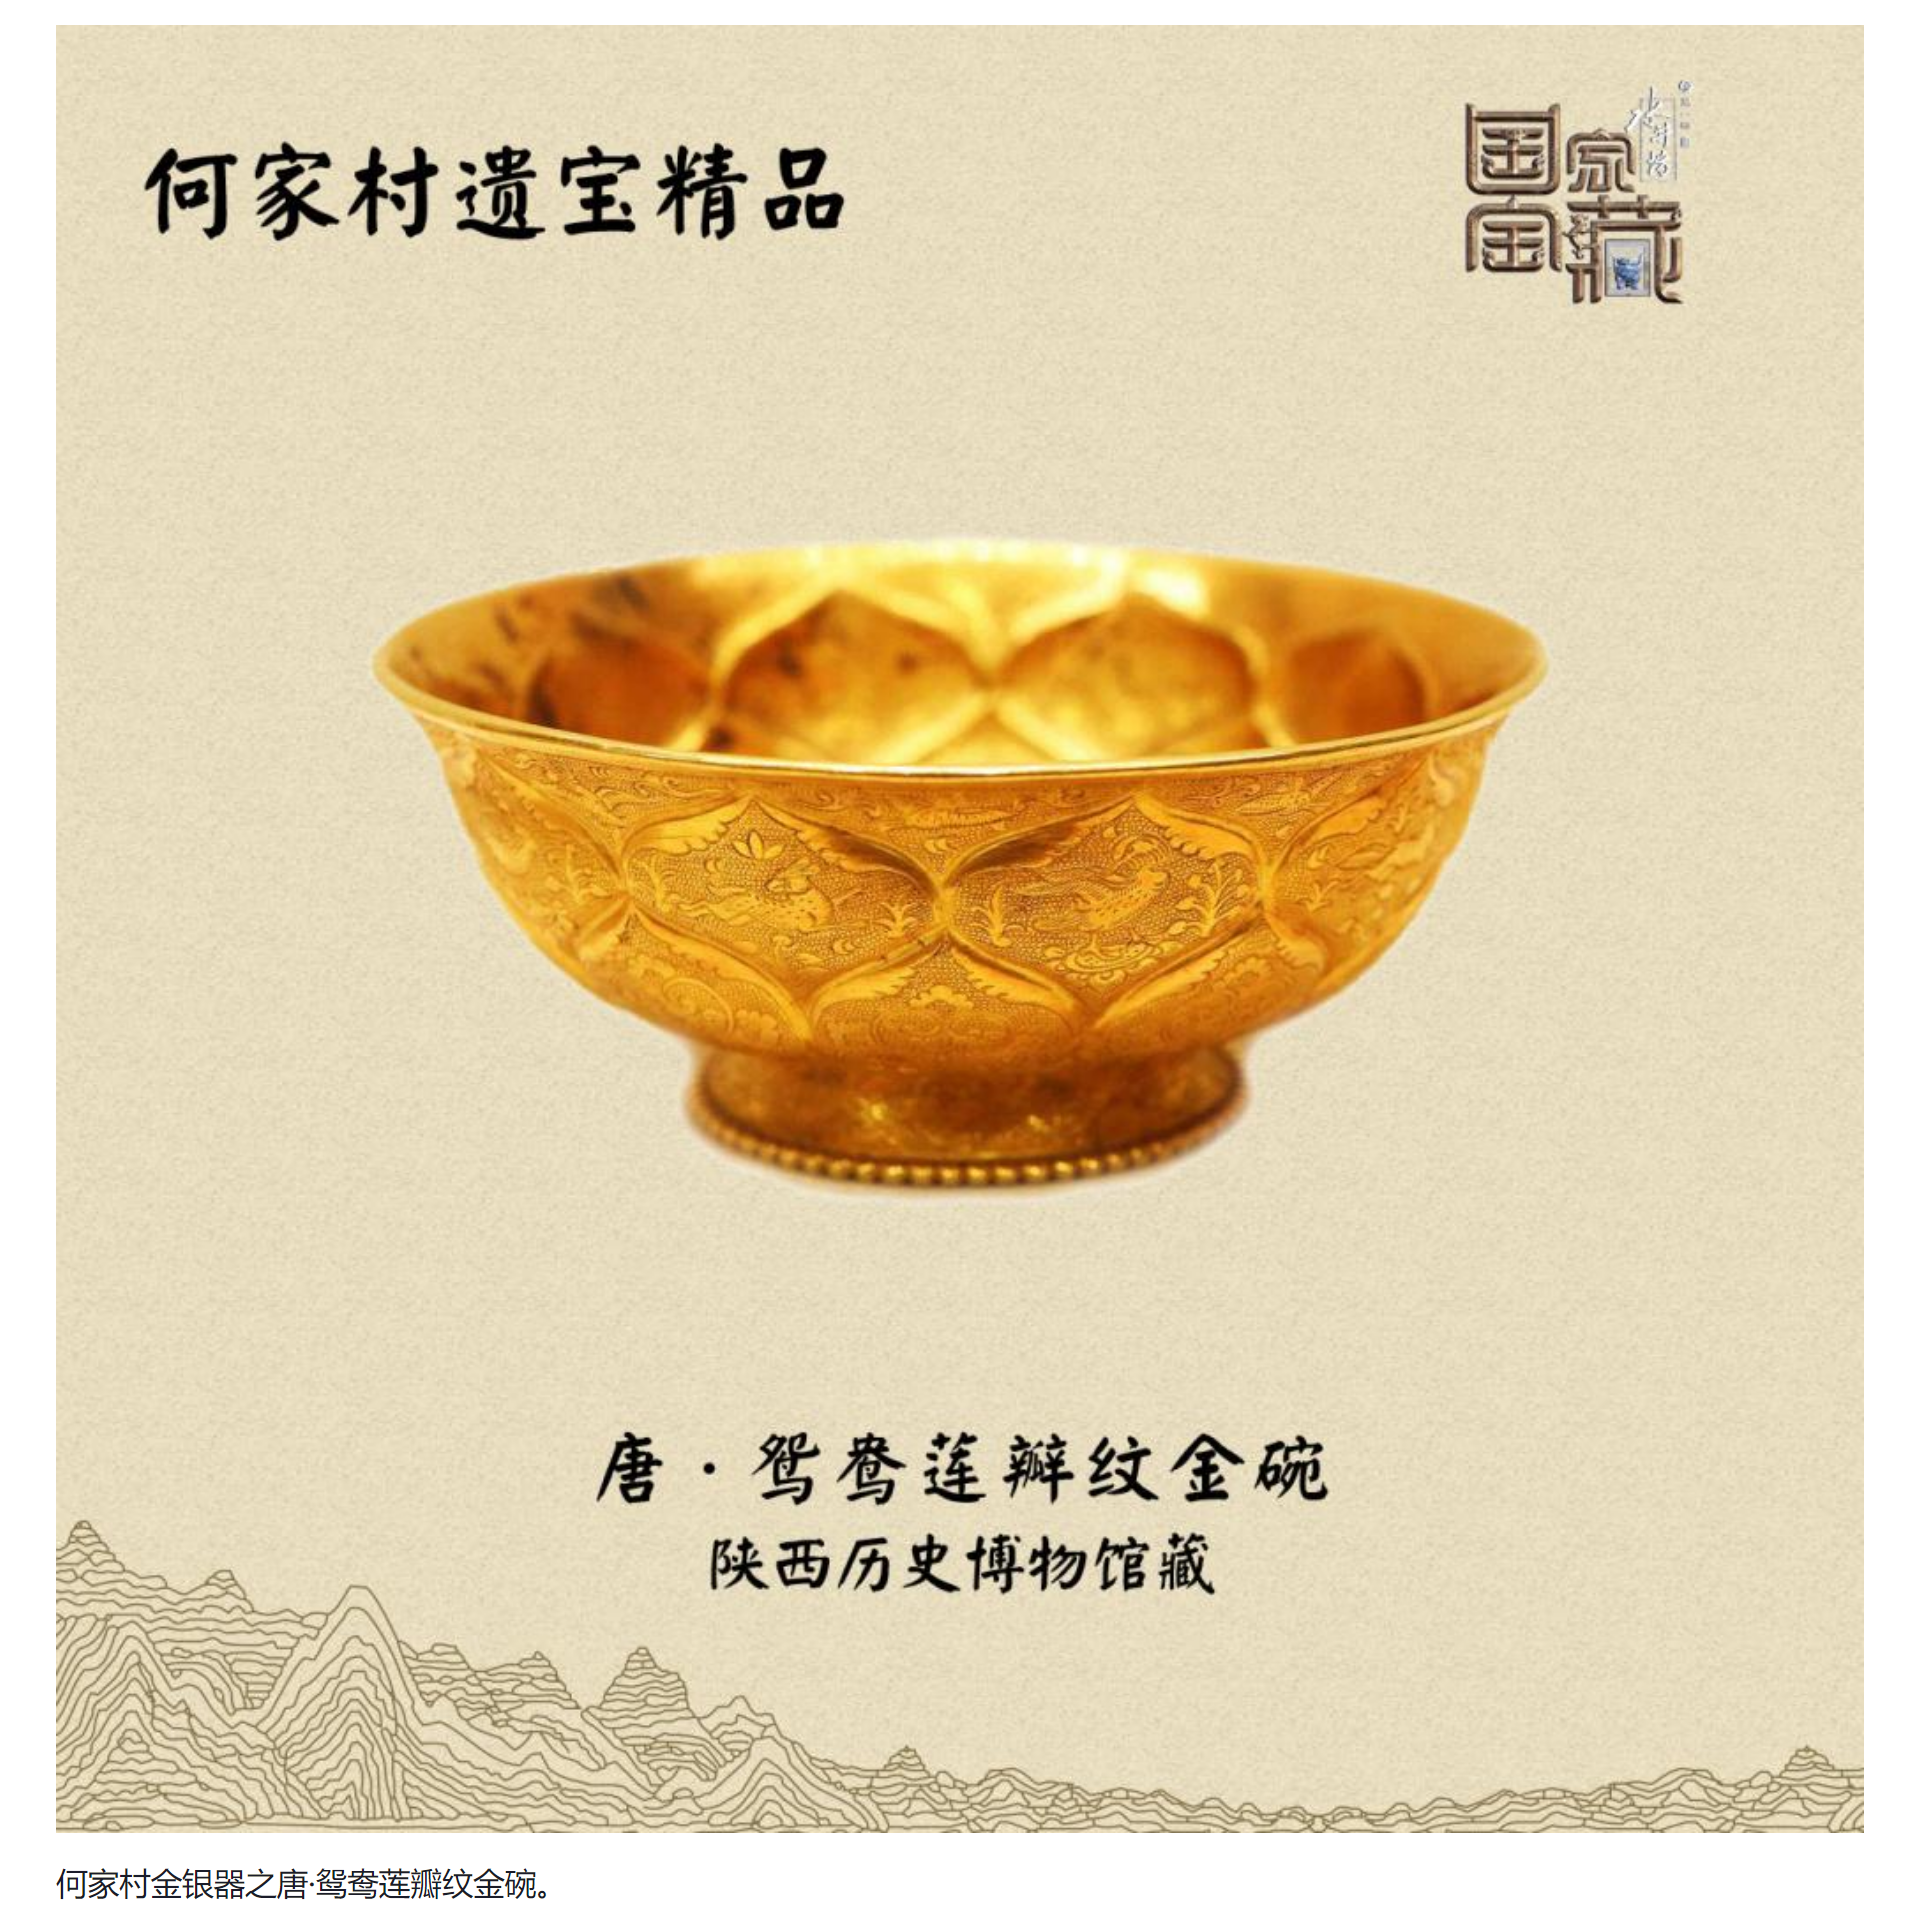 陕西历史博物馆珍藏的鸳鸯莲瓣纹金碗